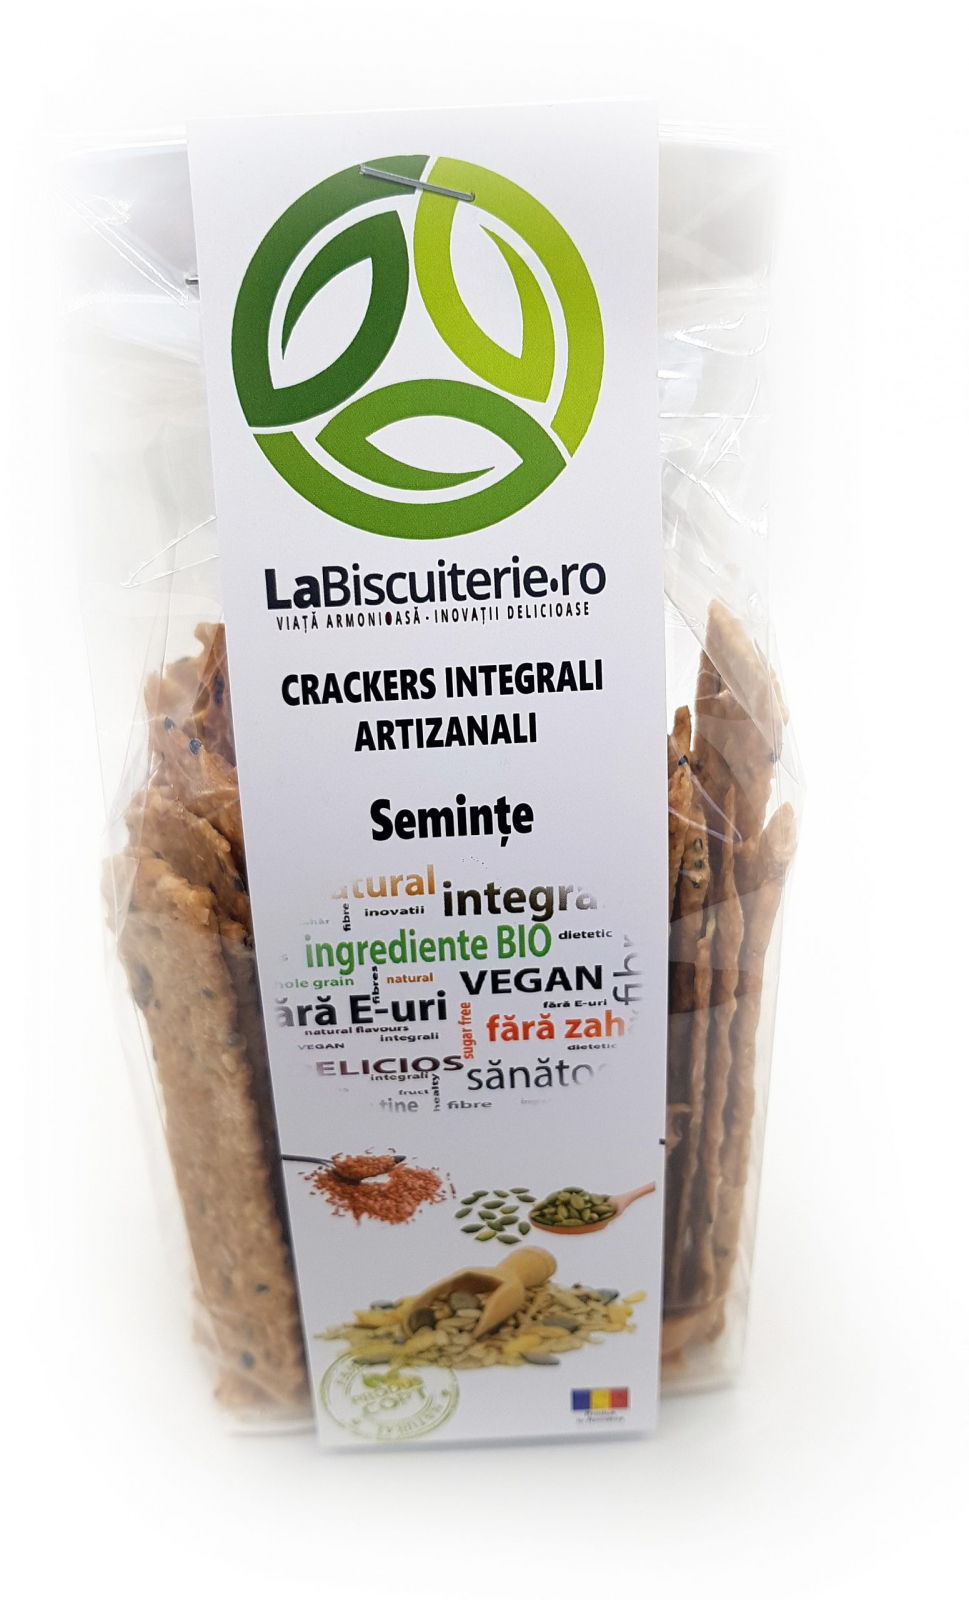 Crackers - Integrali cu seminte | La Biscuiterie